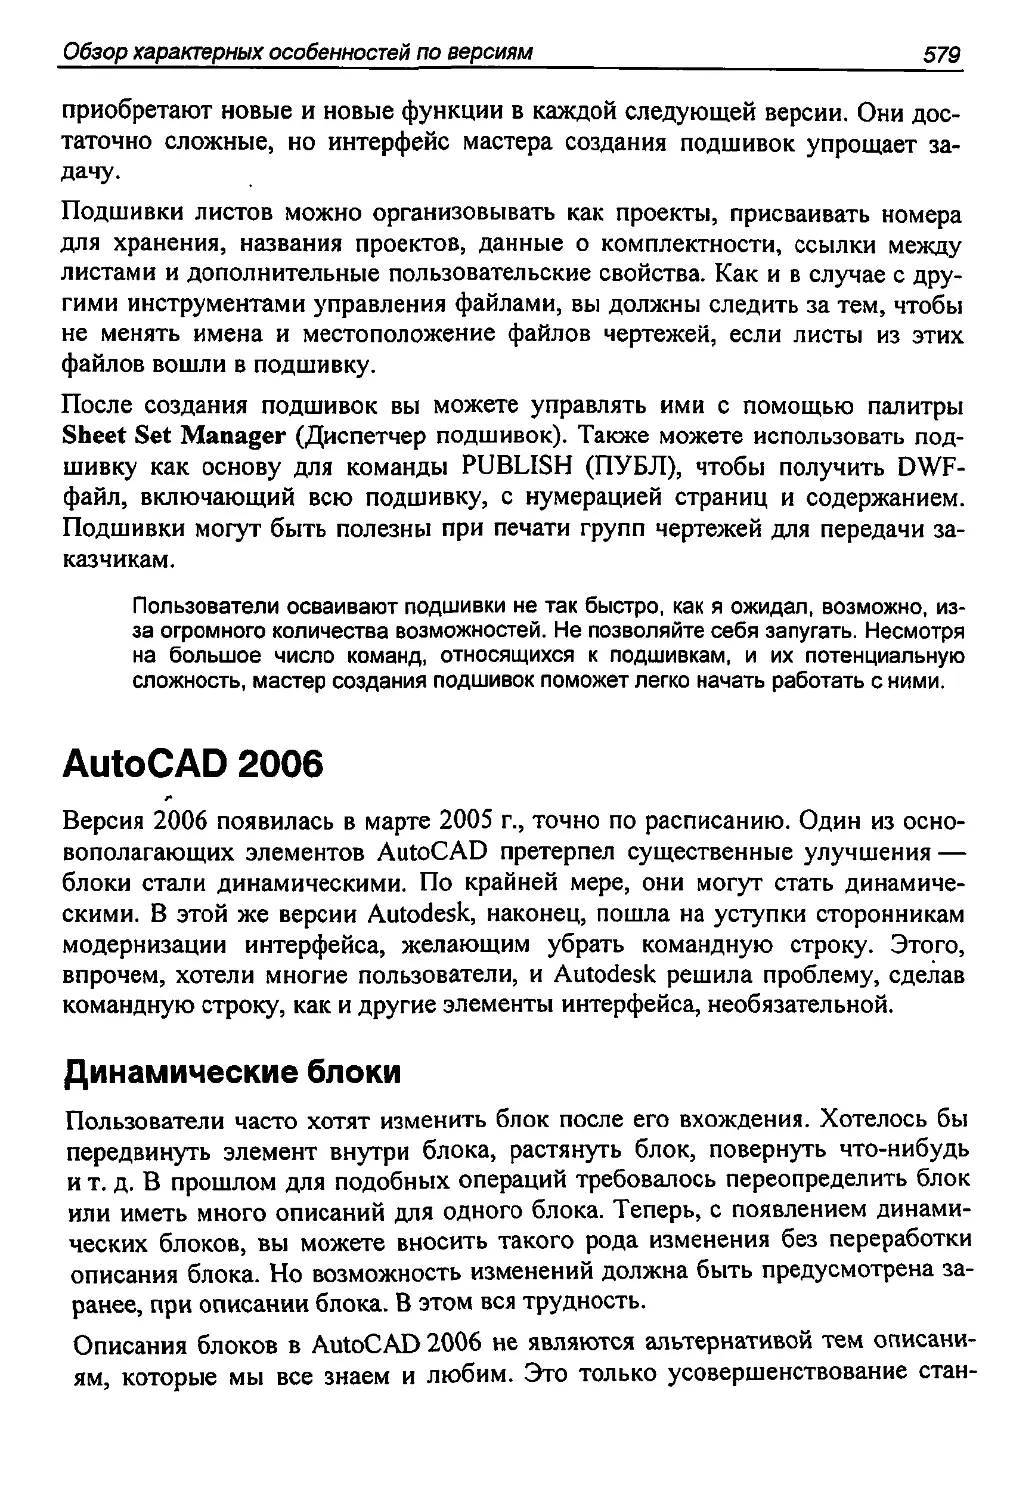 AutoCAD 2006
Динамические блоки